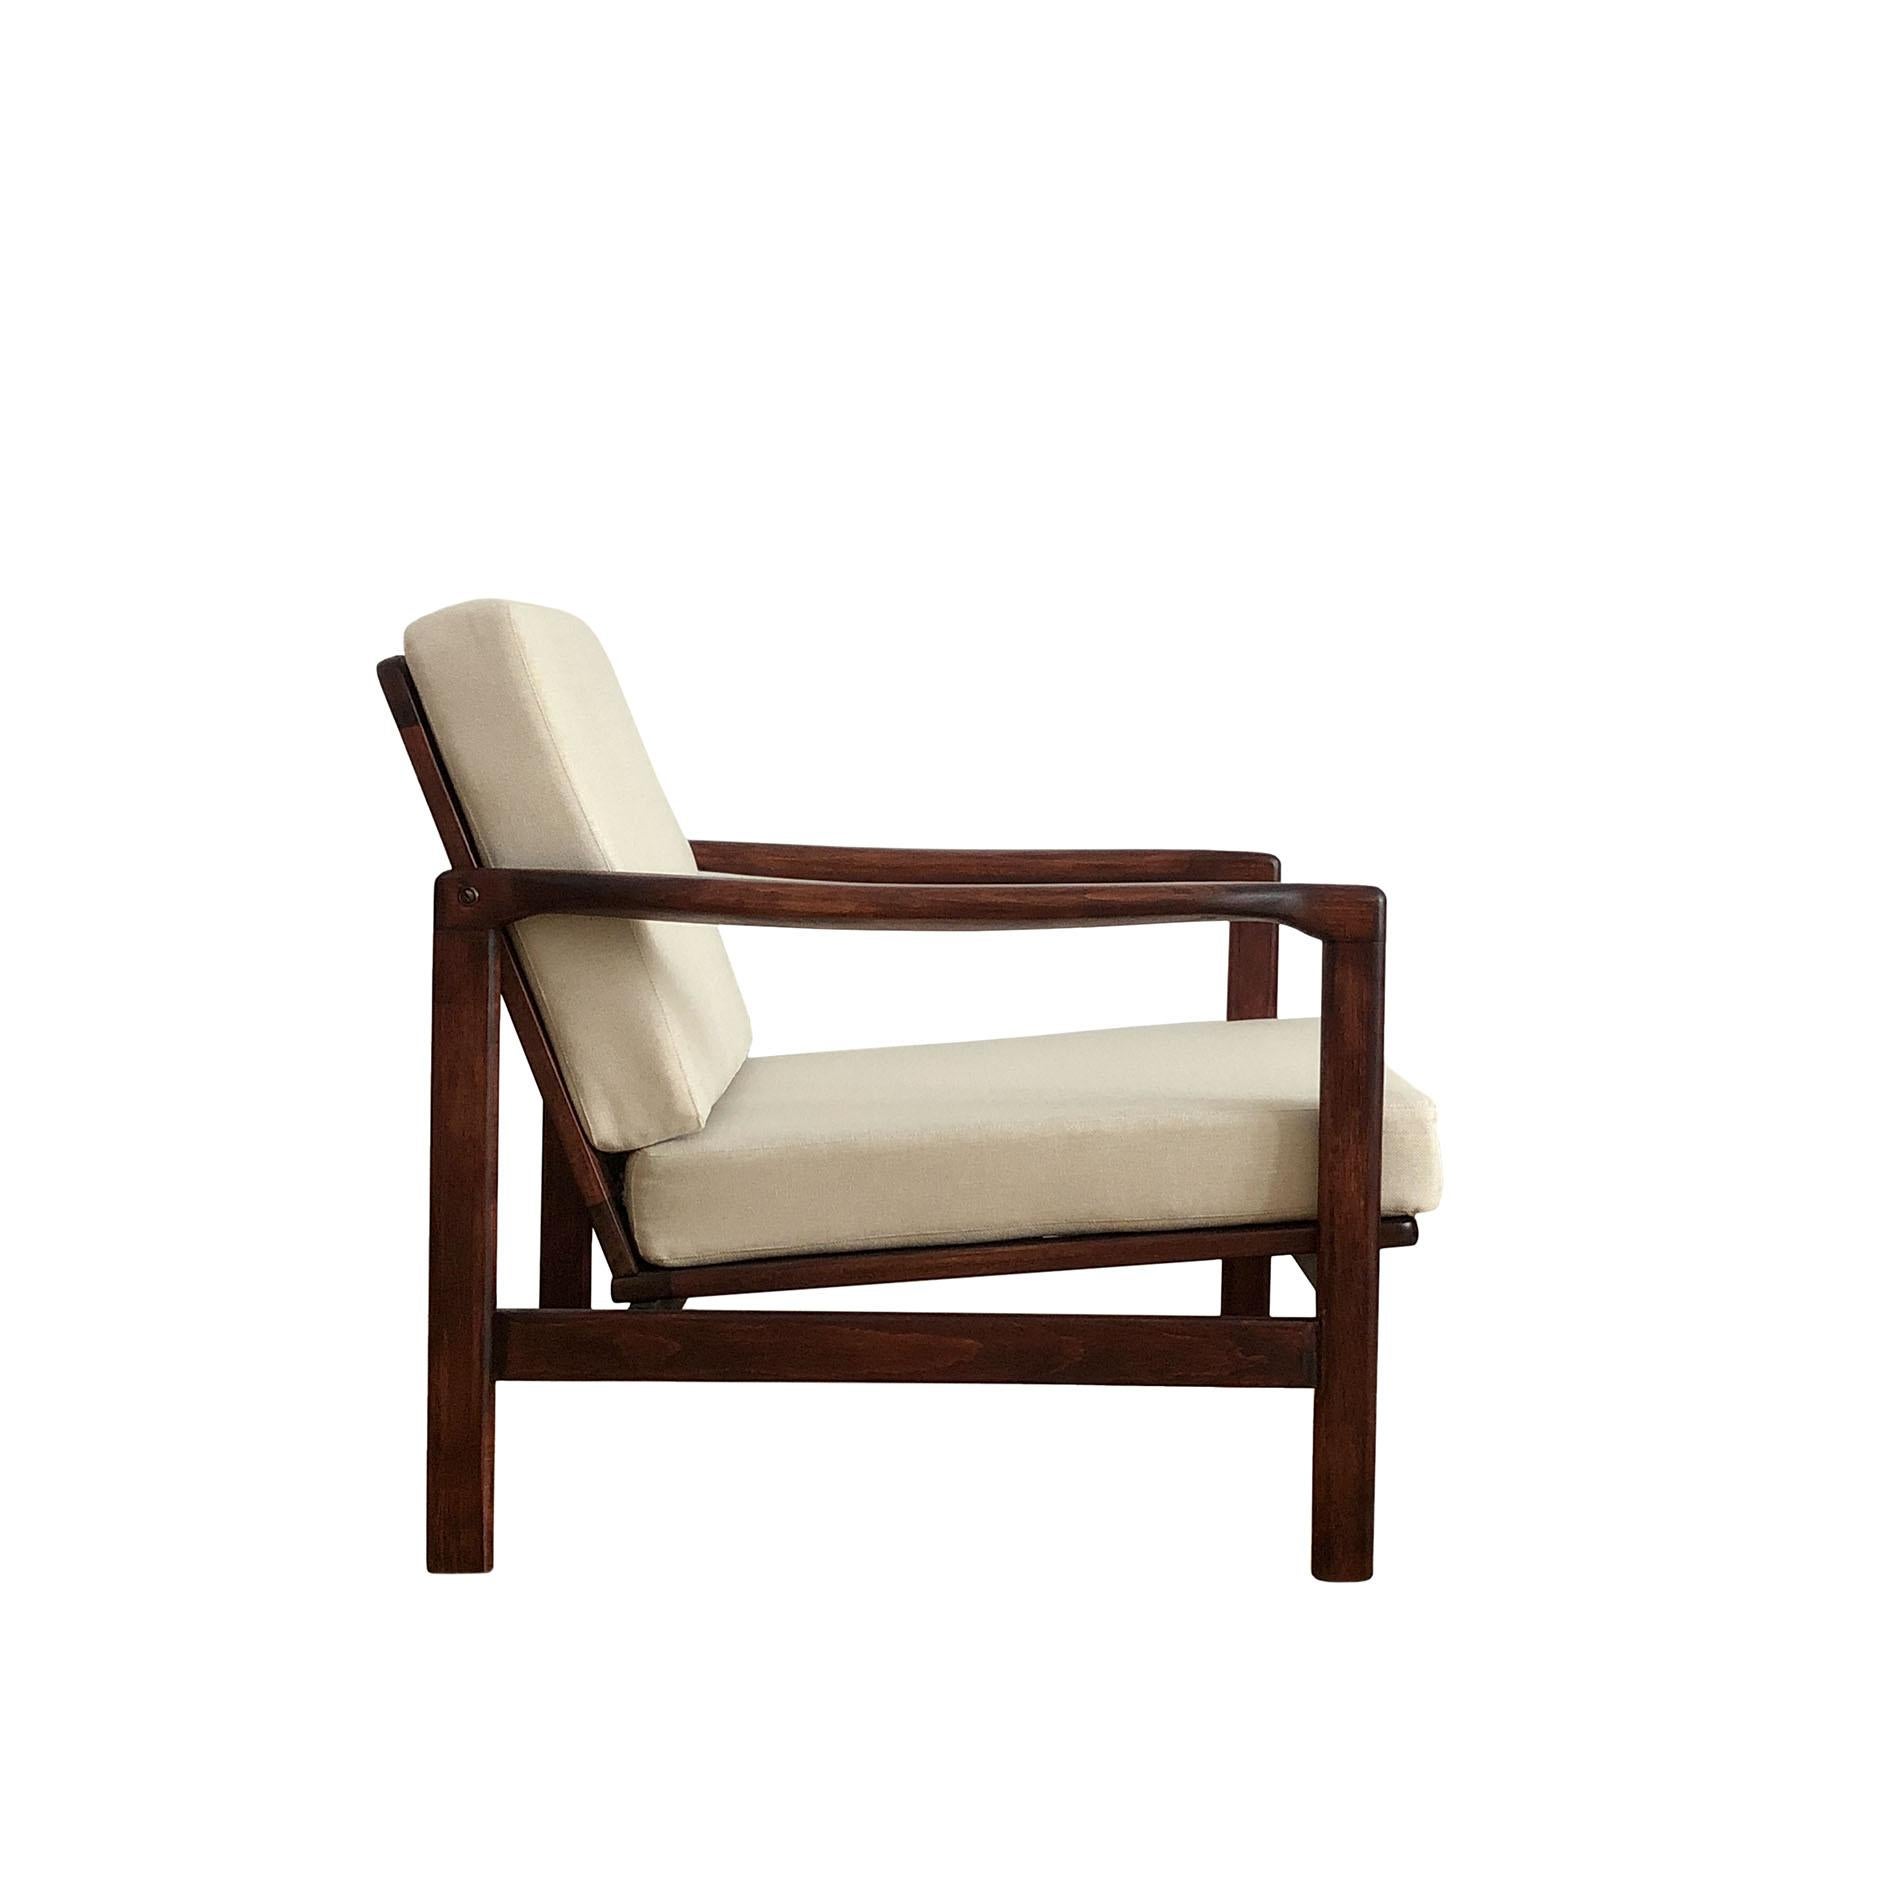 Das Sesselmodell B-7752, entworfen von Zenon Baczyk, wurde in den 1960er Jahren von Swarzedzkie Fabryki Mebli in Polen hergestellt. Die Struktur ist aus Buchenholz in der Farbe Palisander gefertigt und mit einem halbmatten Lack versehen. Die